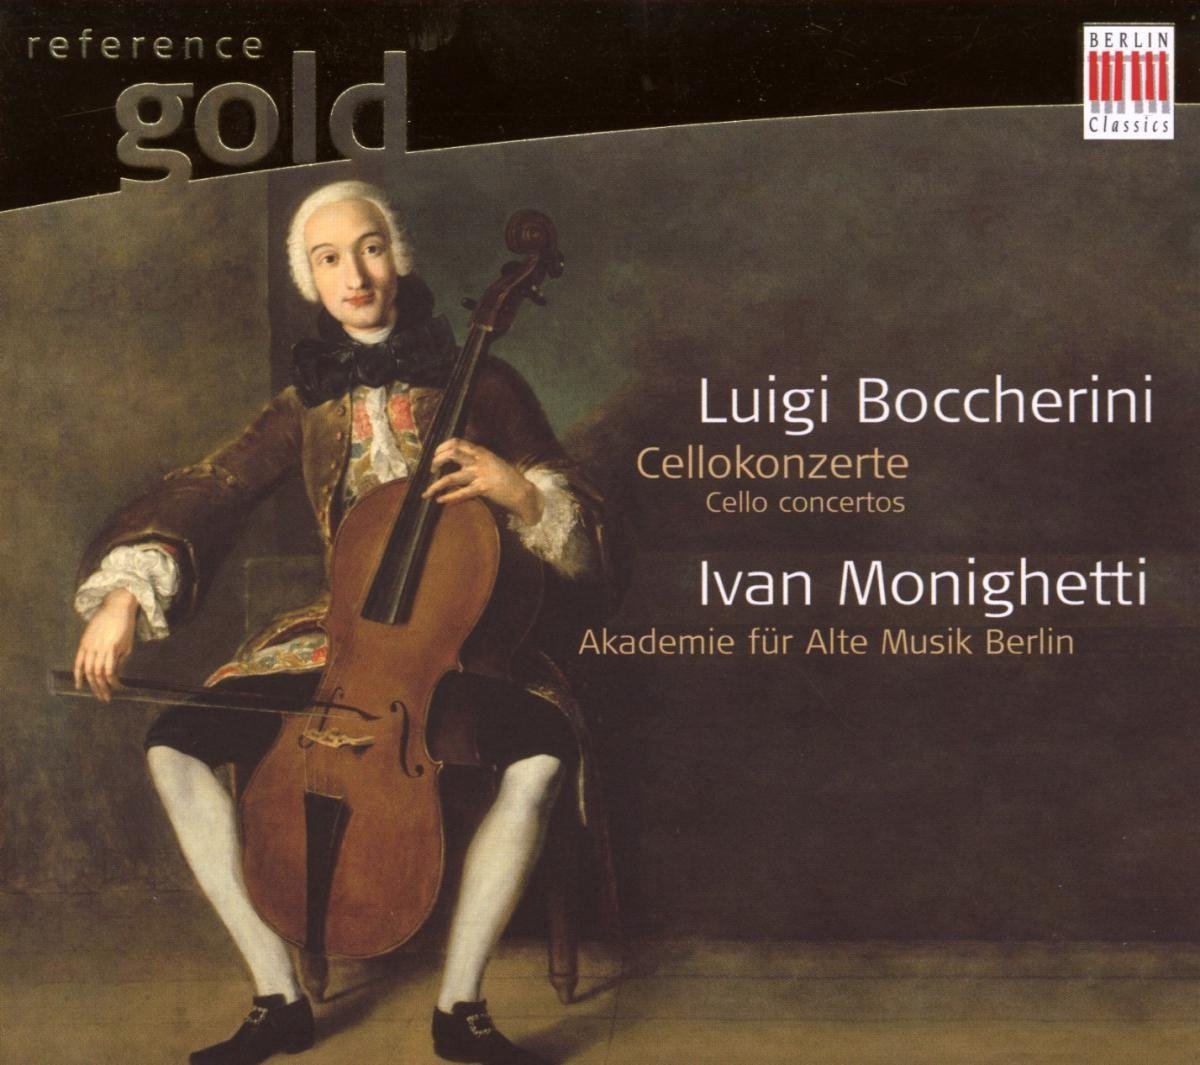 Ivan Monighetti, Akademie für Alte Musik Berlin - Cellokonzerte (CD)